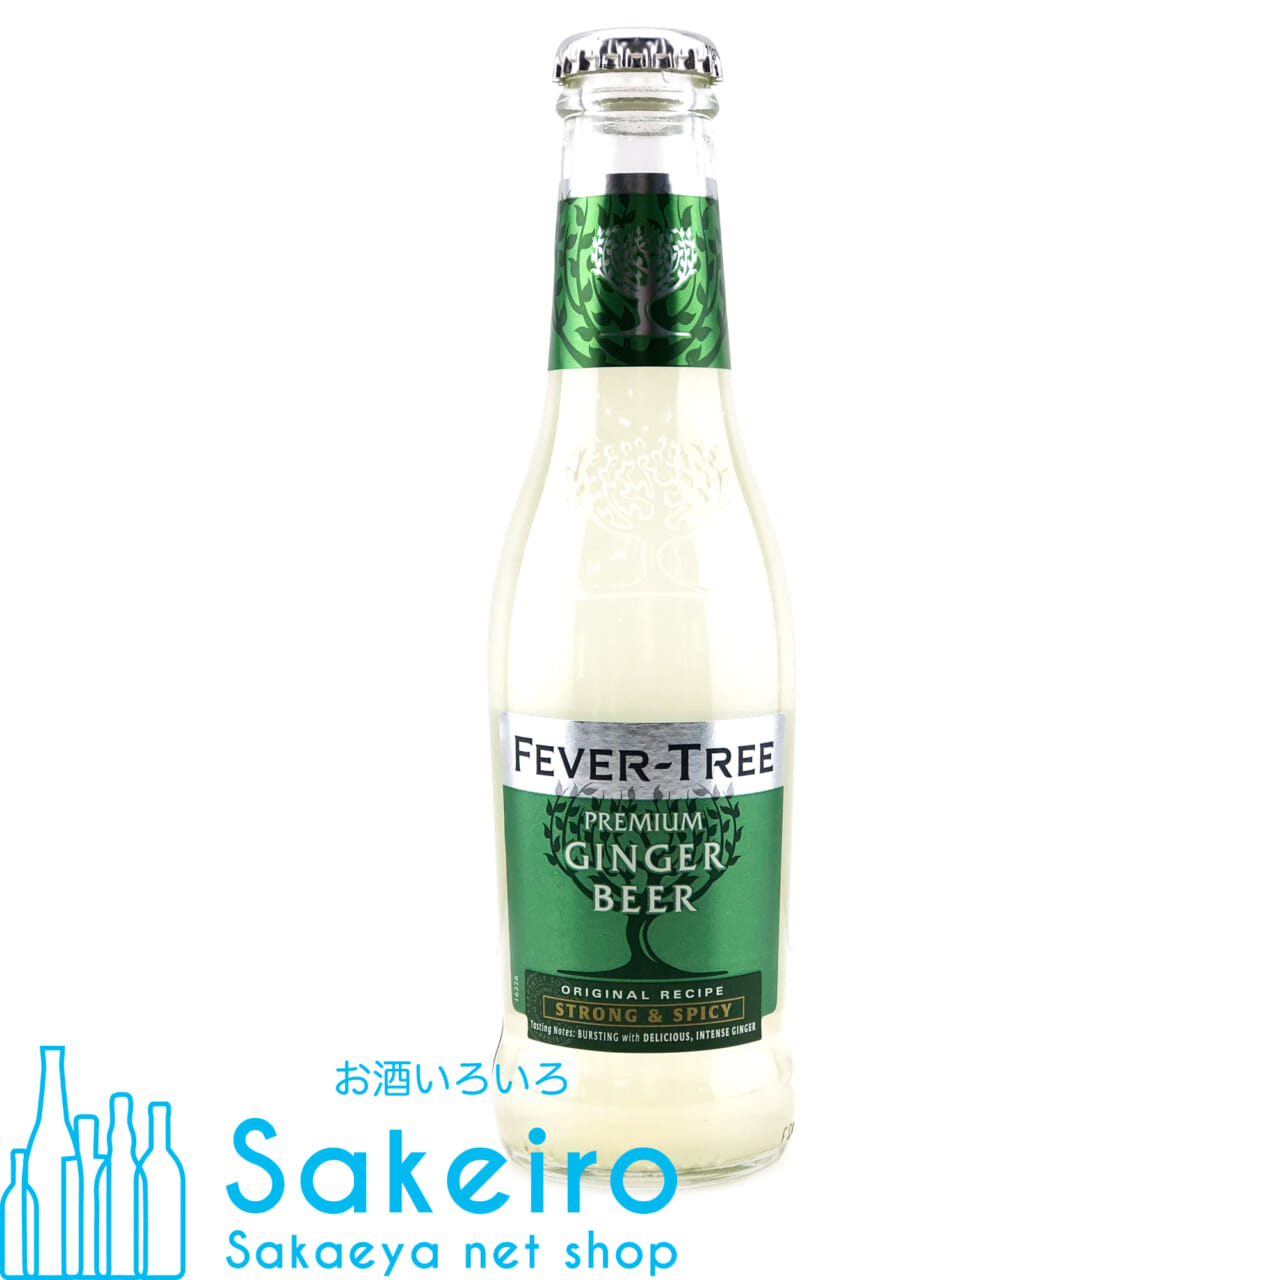 フィーバーツリー プレミアム ジンジャー ビア 200ml お酒いろいろ Sakeiro -Sakaeya net shop-